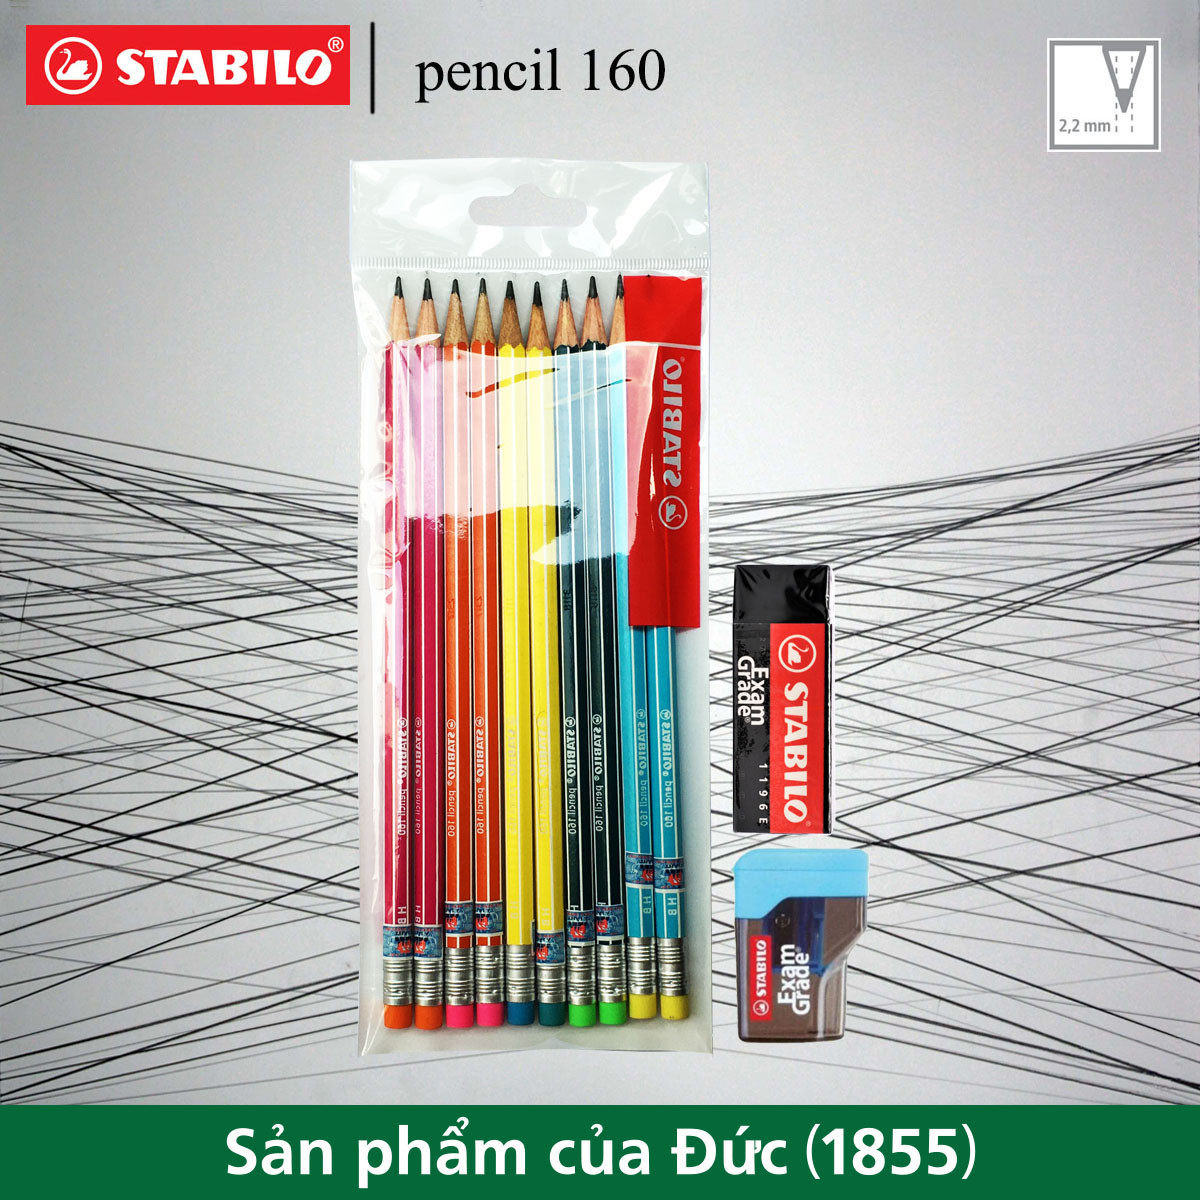 Bộ 10 cây bút chì gỗ STABILO pencil 160 HB (2 màu nhớt + 2 màu vàng + 2 màu hồng + 2 màu cam + 2 màu xanh) (PC2160-C10)